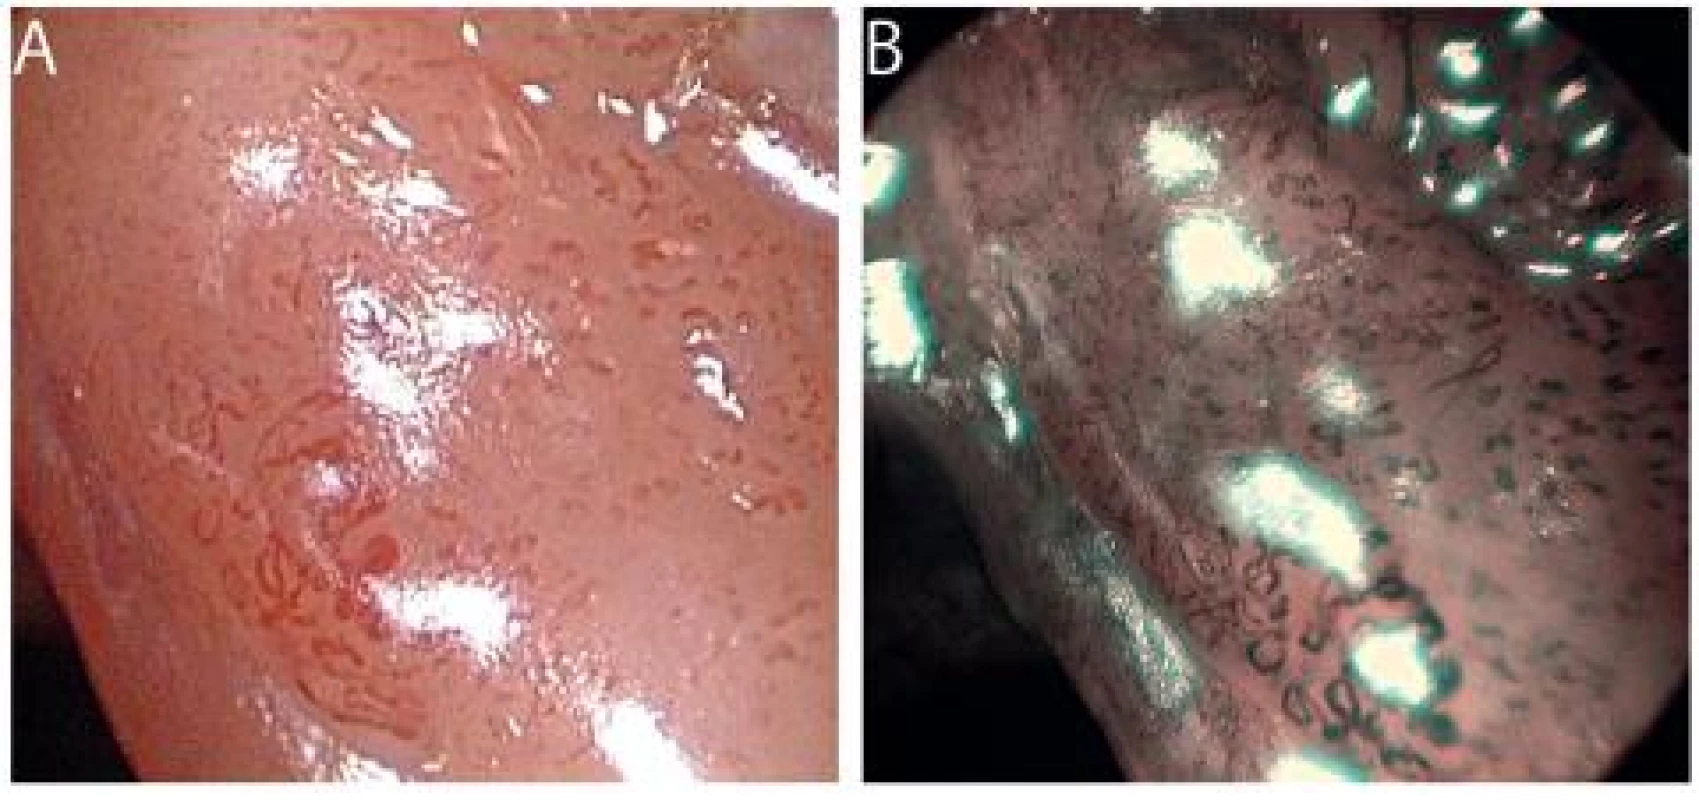 Dlaždicobuněčný karcinom hlasivky v HDTV zvětšovací endoskopii v bílém světle (A) a v NBI (B). Kompletní rozpad cévní mikroarchitektury a nepravidelnosti IPCL jsou charakteristické pro karcinom.